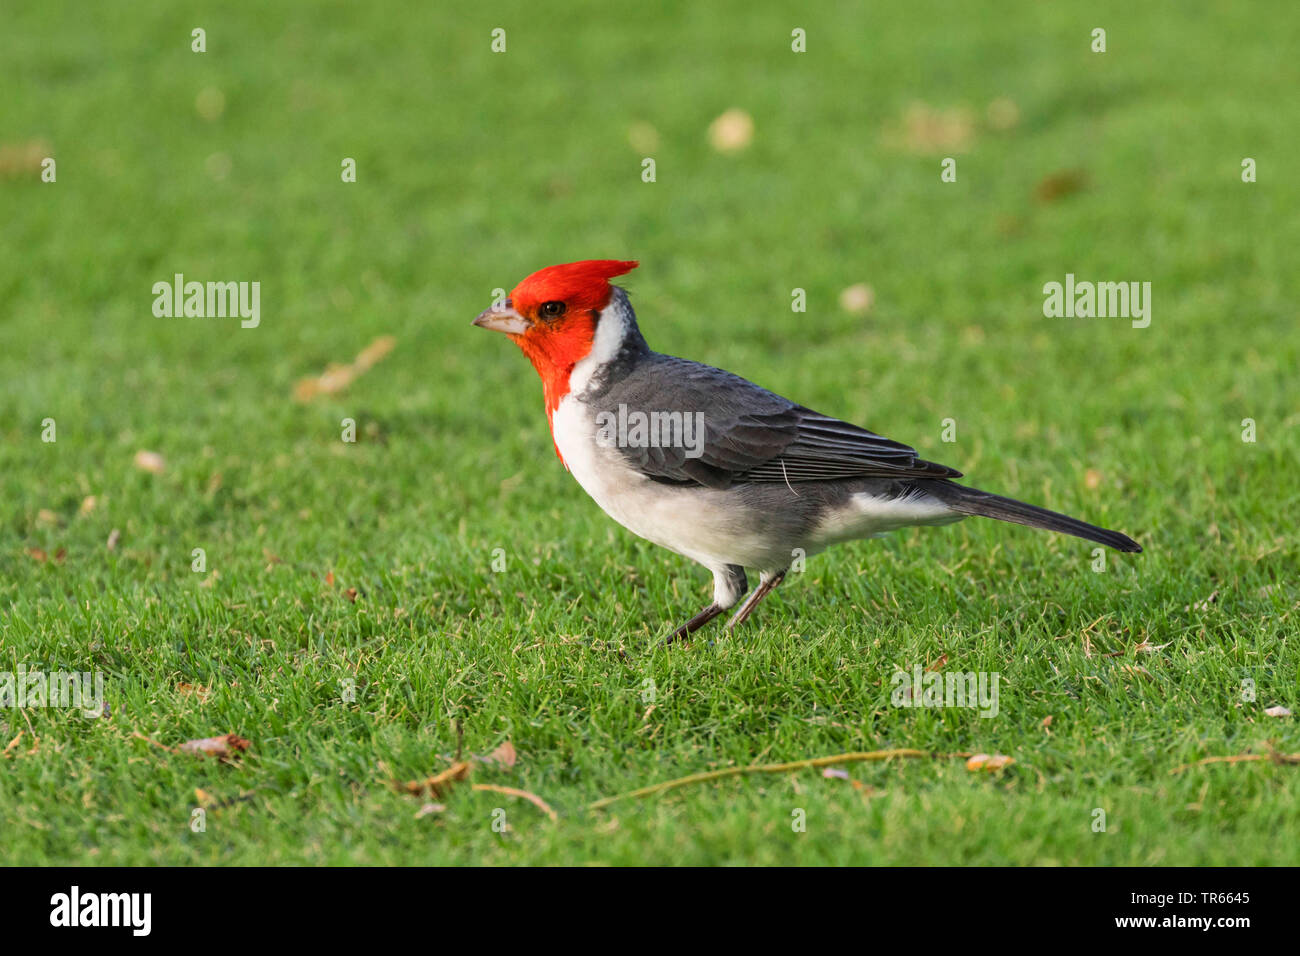 Rojo-crested cardenal (Paroaria coronata), cazando en un campo de golf, vista lateral, ESTADOS UNIDOS, Arizona, Wailea Blue Golf Course, Kihei Foto de stock